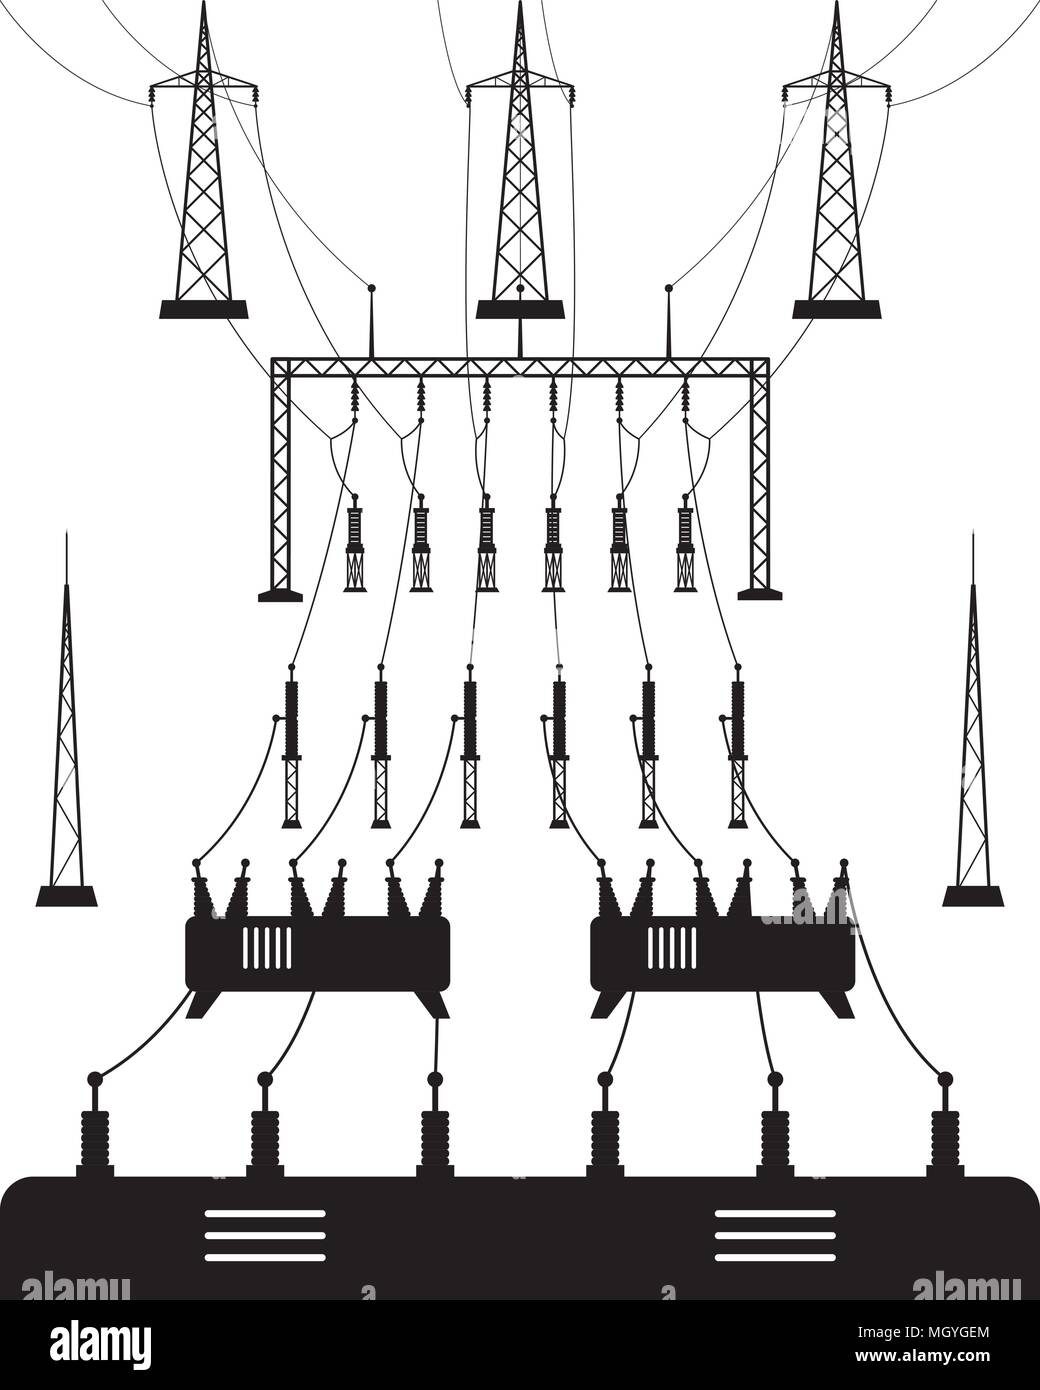 Sous-station du réseau électrique - vector illustration Illustration de Vecteur